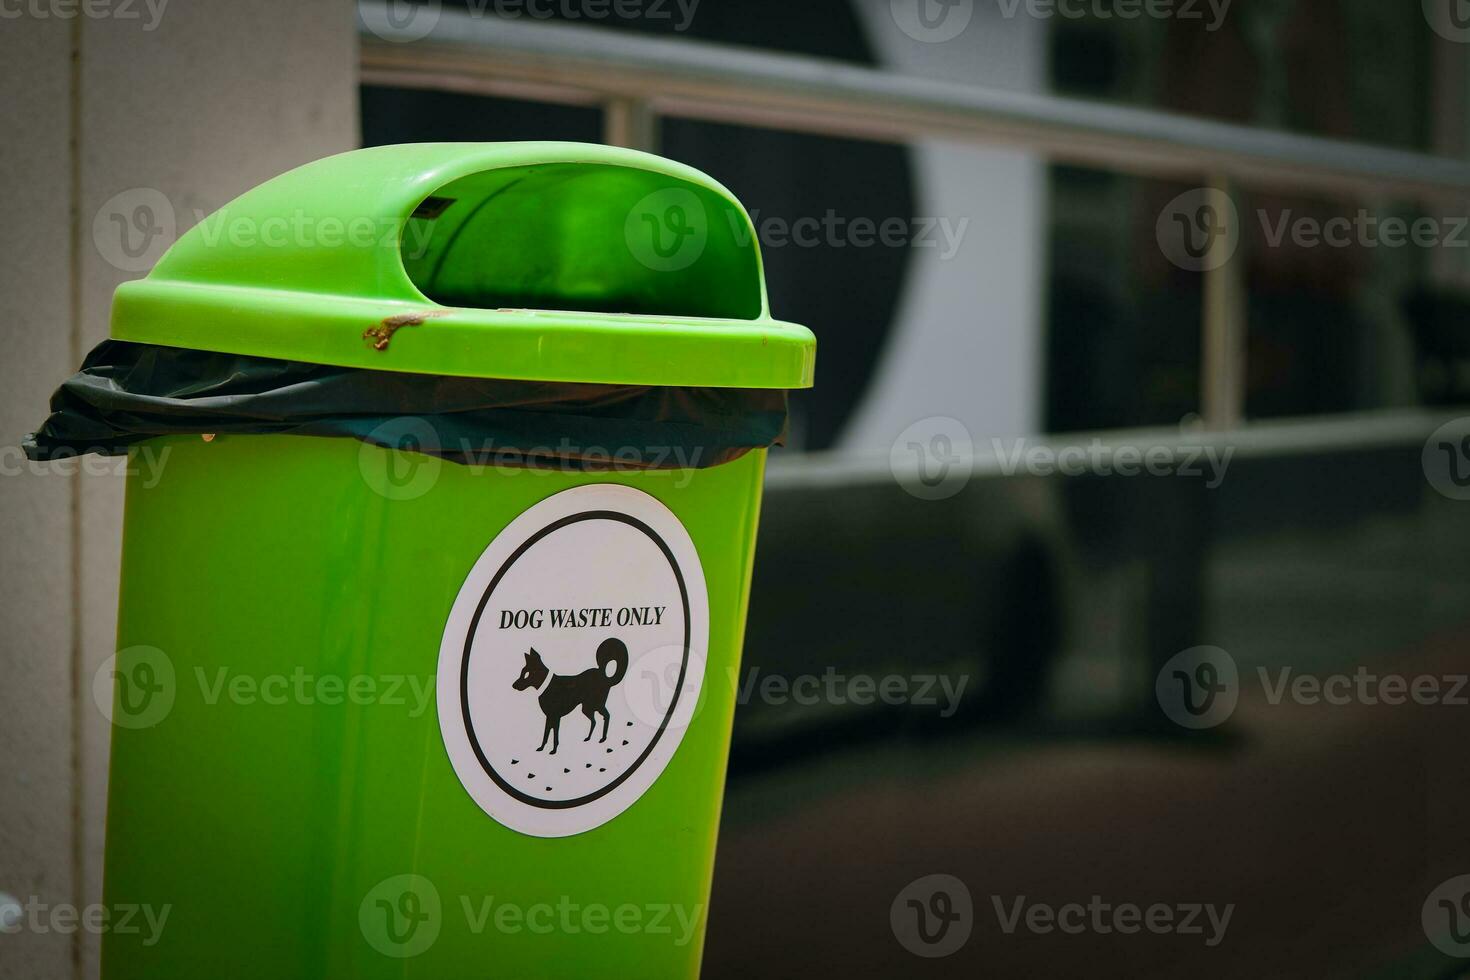 ambientalmente consciente solução, isto verde Lixo bin com uma branco adesivo para cachorro desperdício disposição, destacando ecológico atenção e a importância do limpeza acima depois de cães. foto